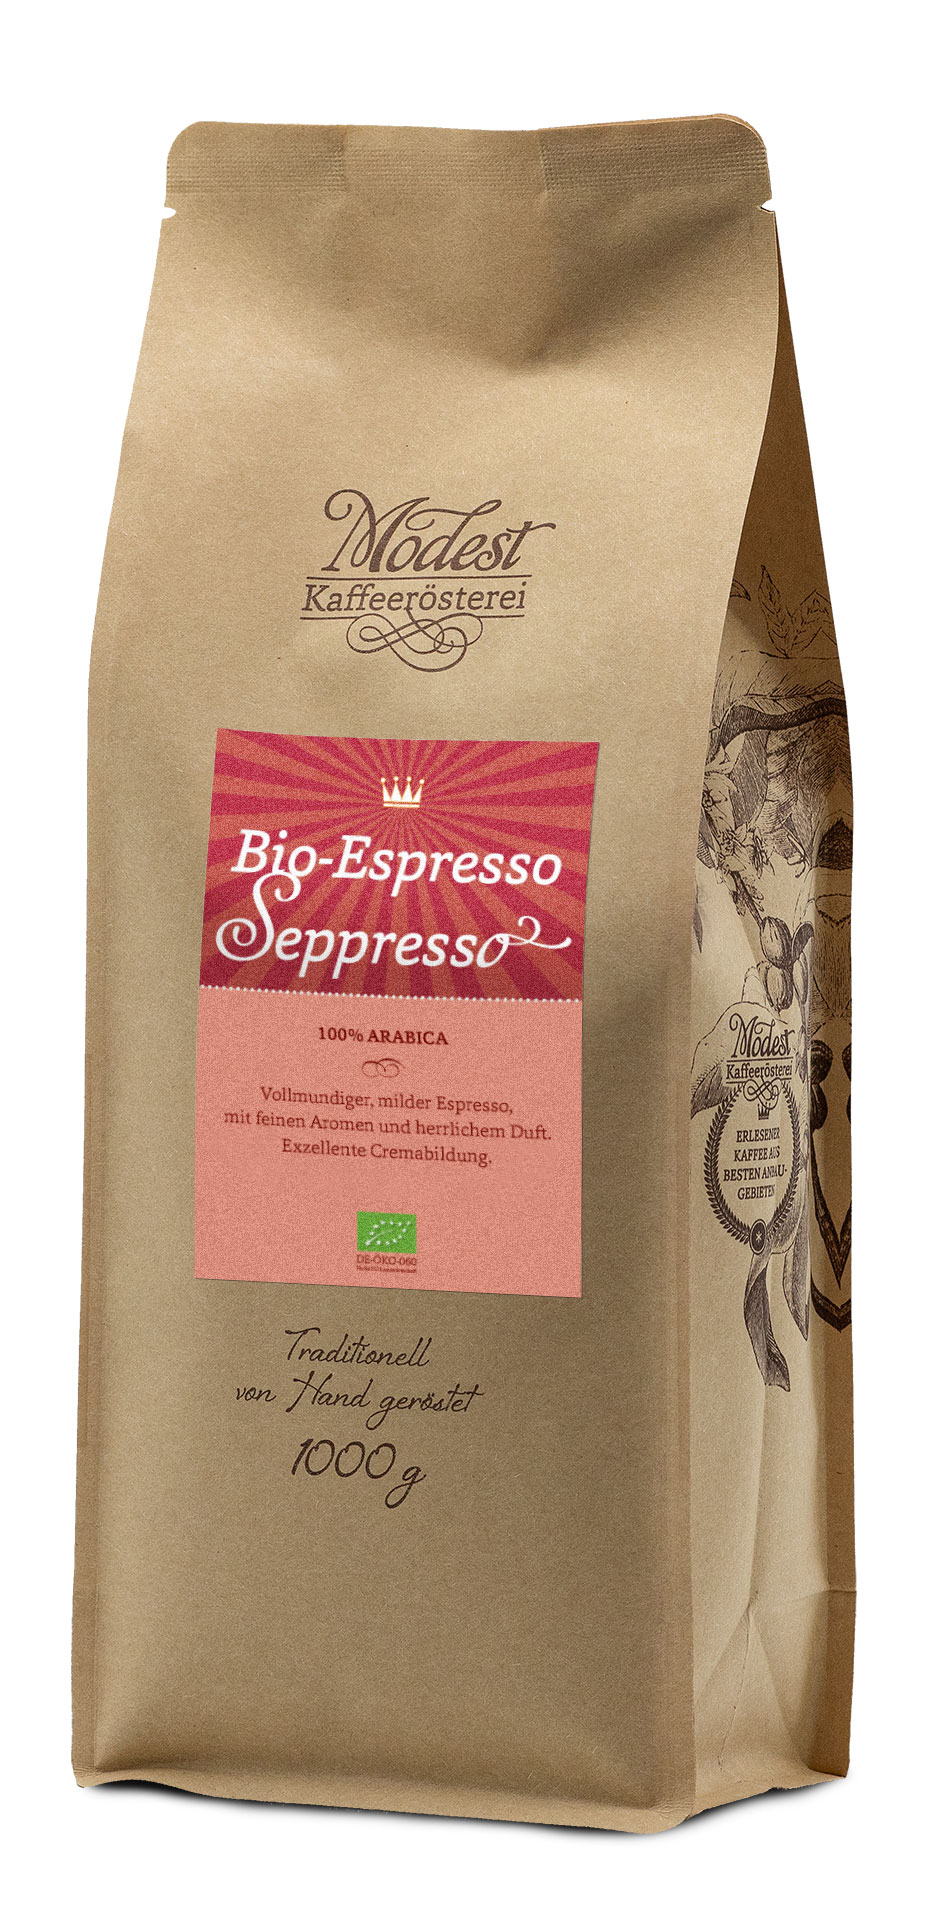 Bio-Espresso Seppresso 100% Arabica